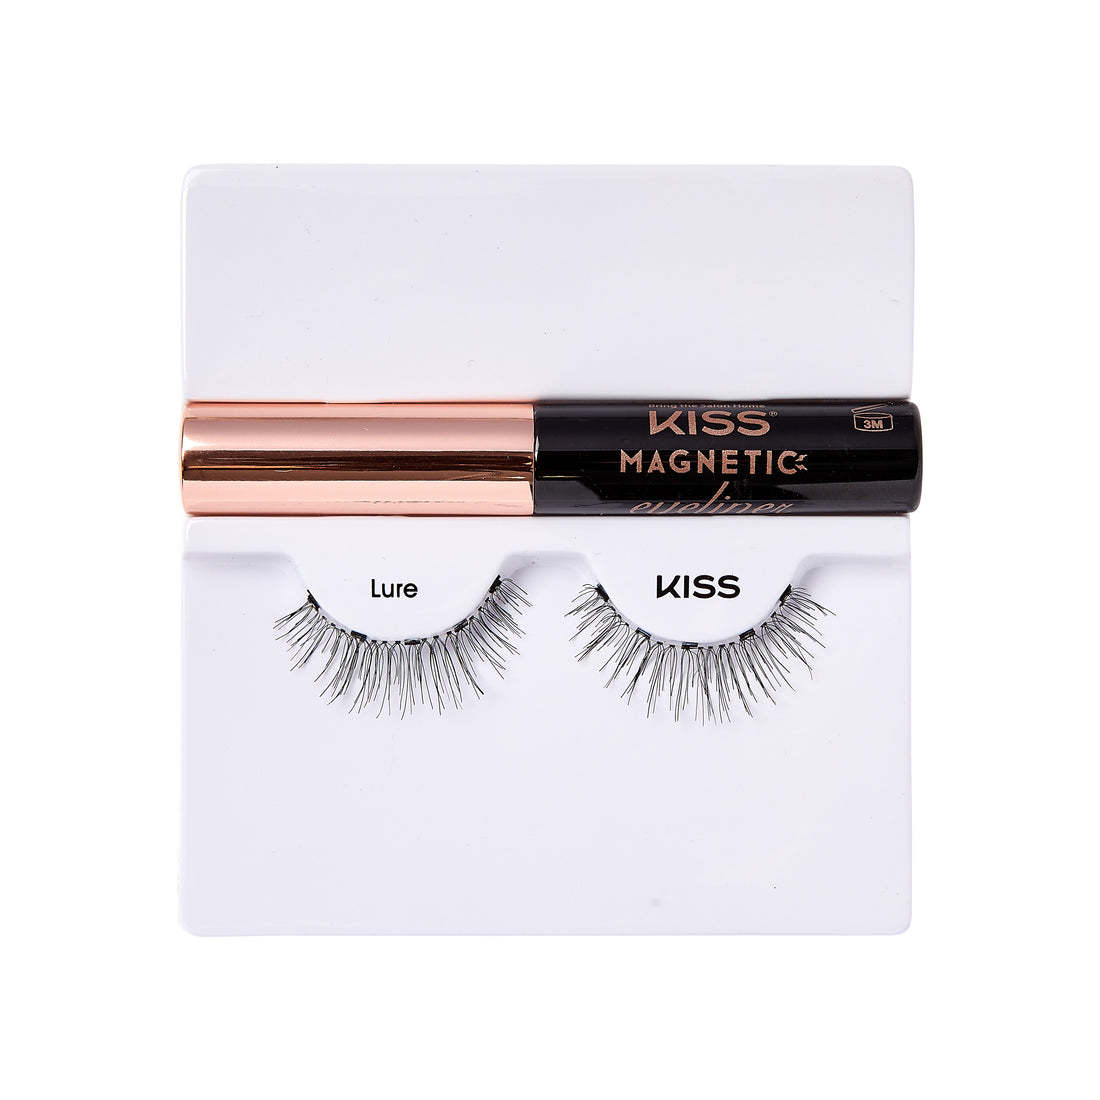 KISS Magnetic Eyeliner &amp; False Eyelashes Kit, Style ‘Lure’ - 1 Pair, 1 Tube